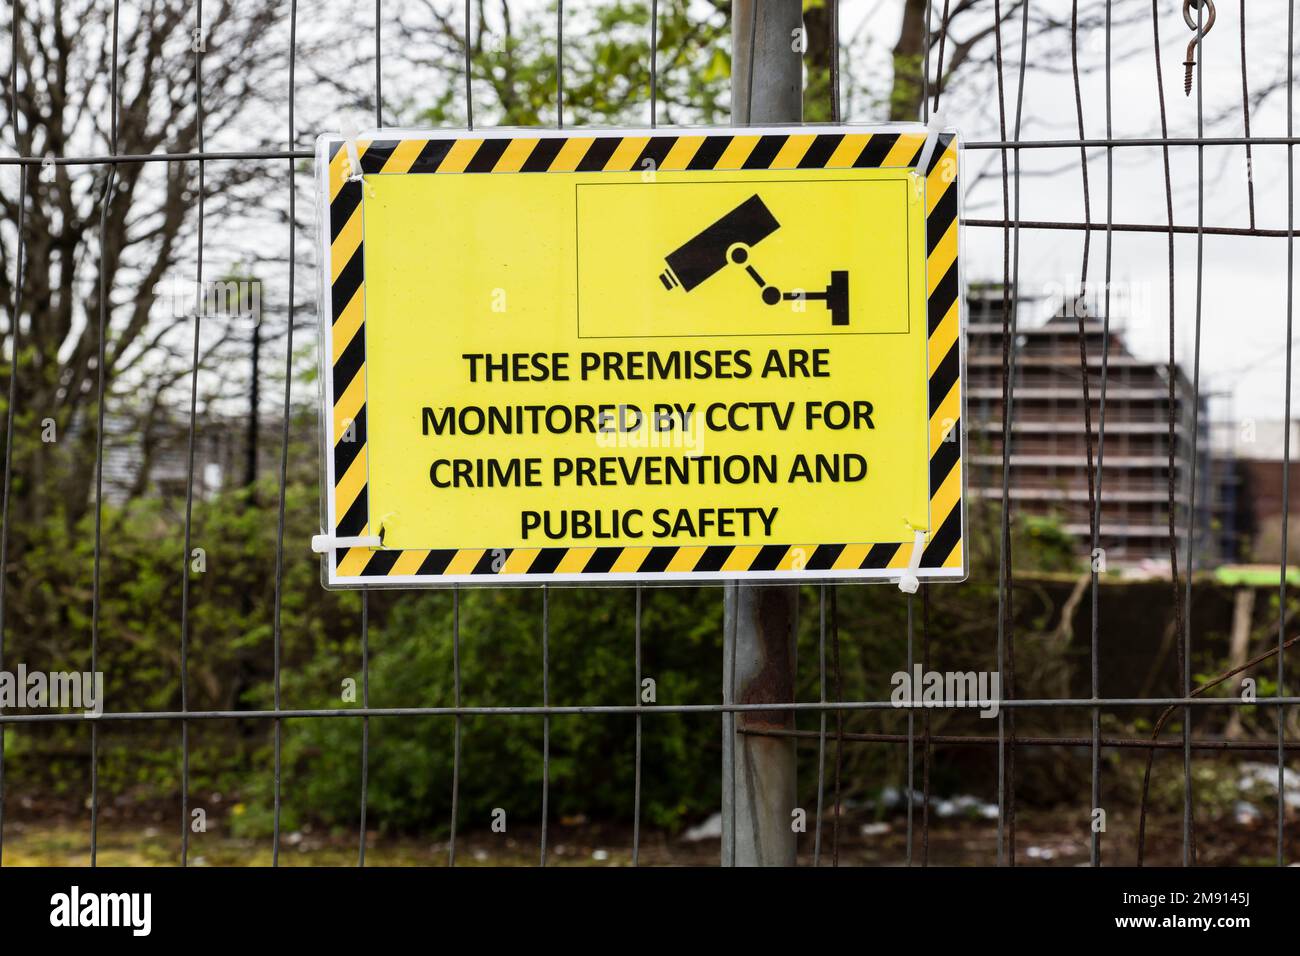 Un panneau indiquant que les locaux sont surveillés par CCTV pour la prévention du crime et la sécurité publique, Glasgow, Écosse, Royaume-Uni, Europe Banque D'Images